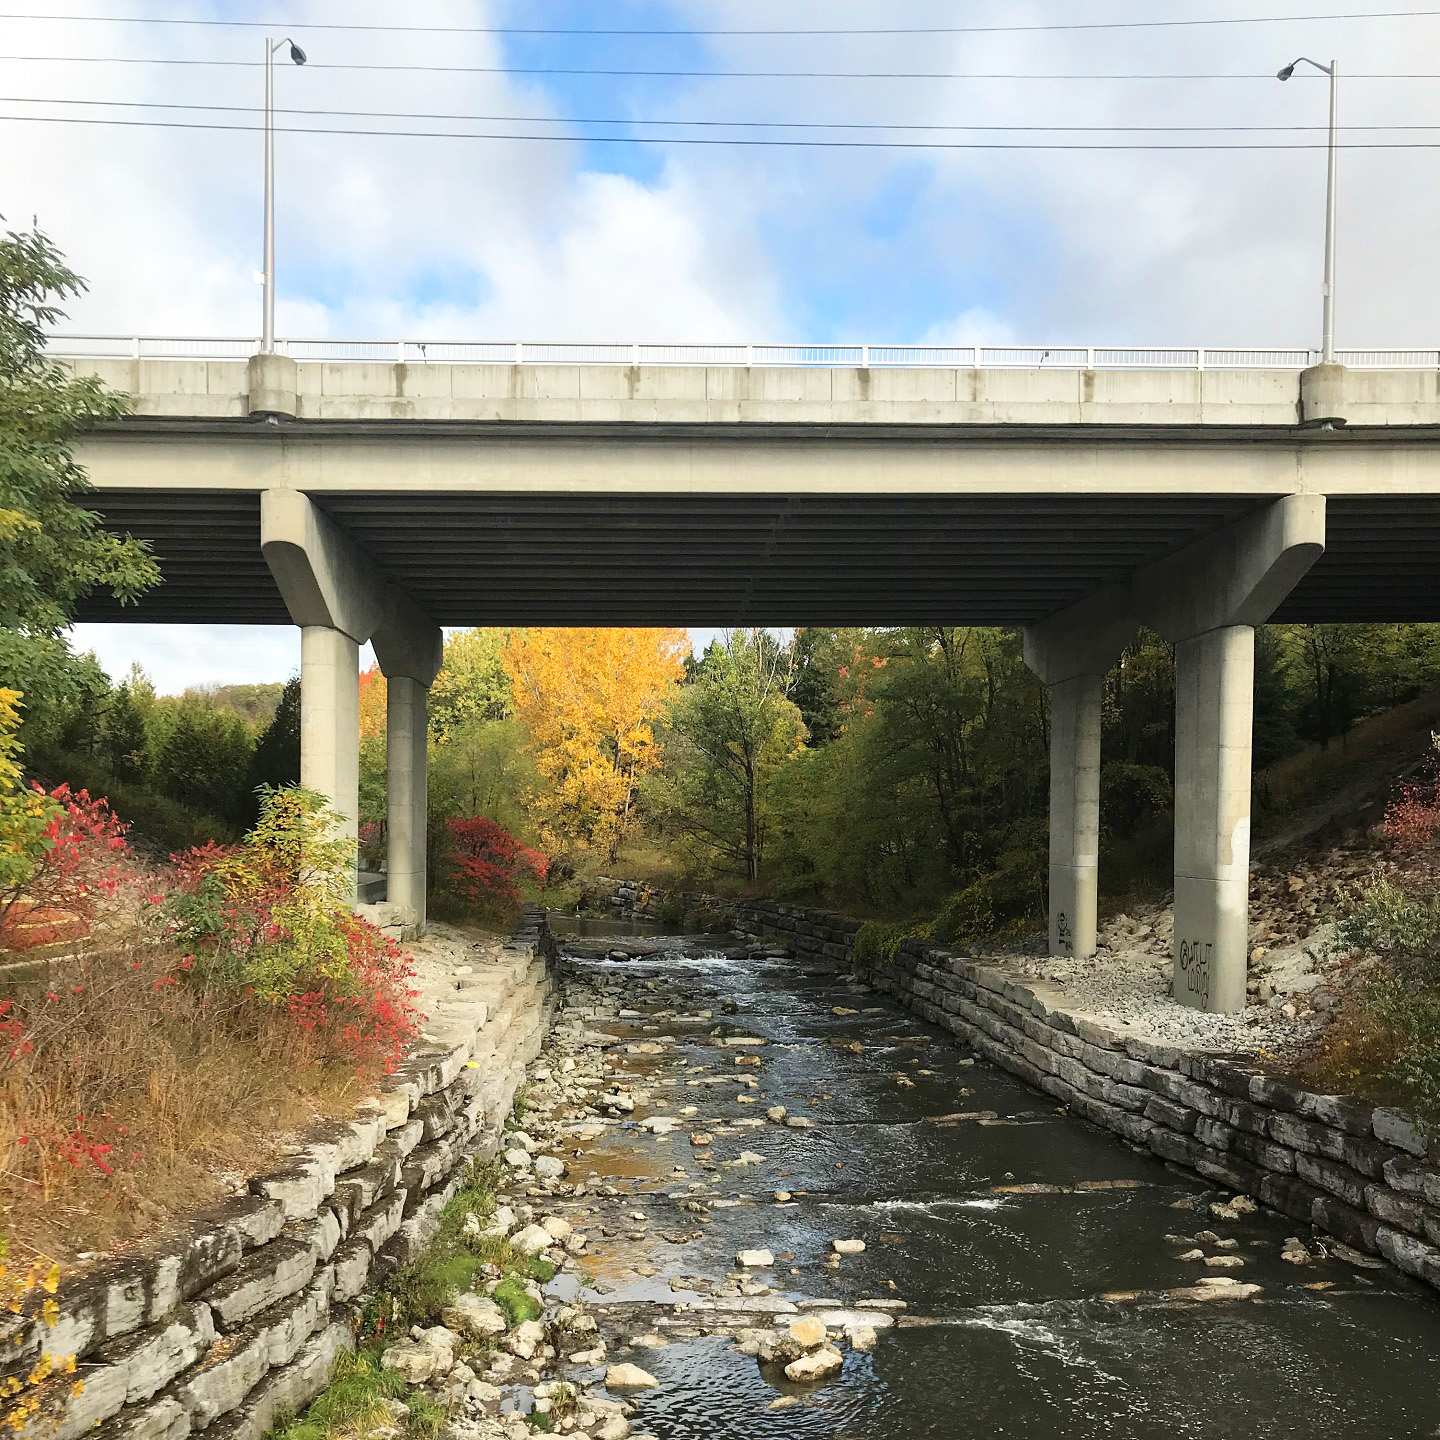 overpass spans Highland Creek